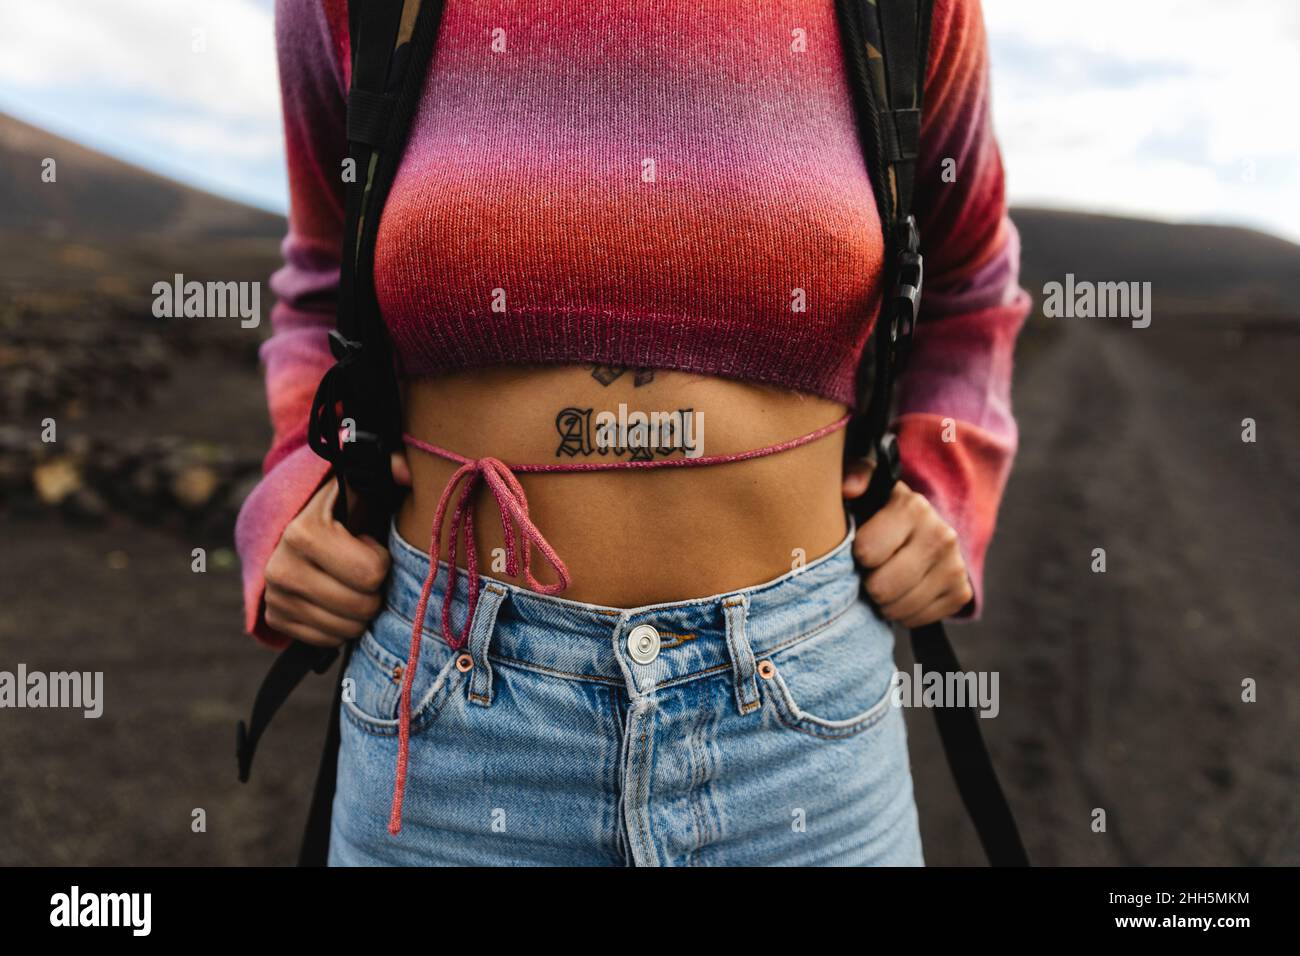 Femme avec MOT Angel tatouage sur l'estomac Banque D'Images